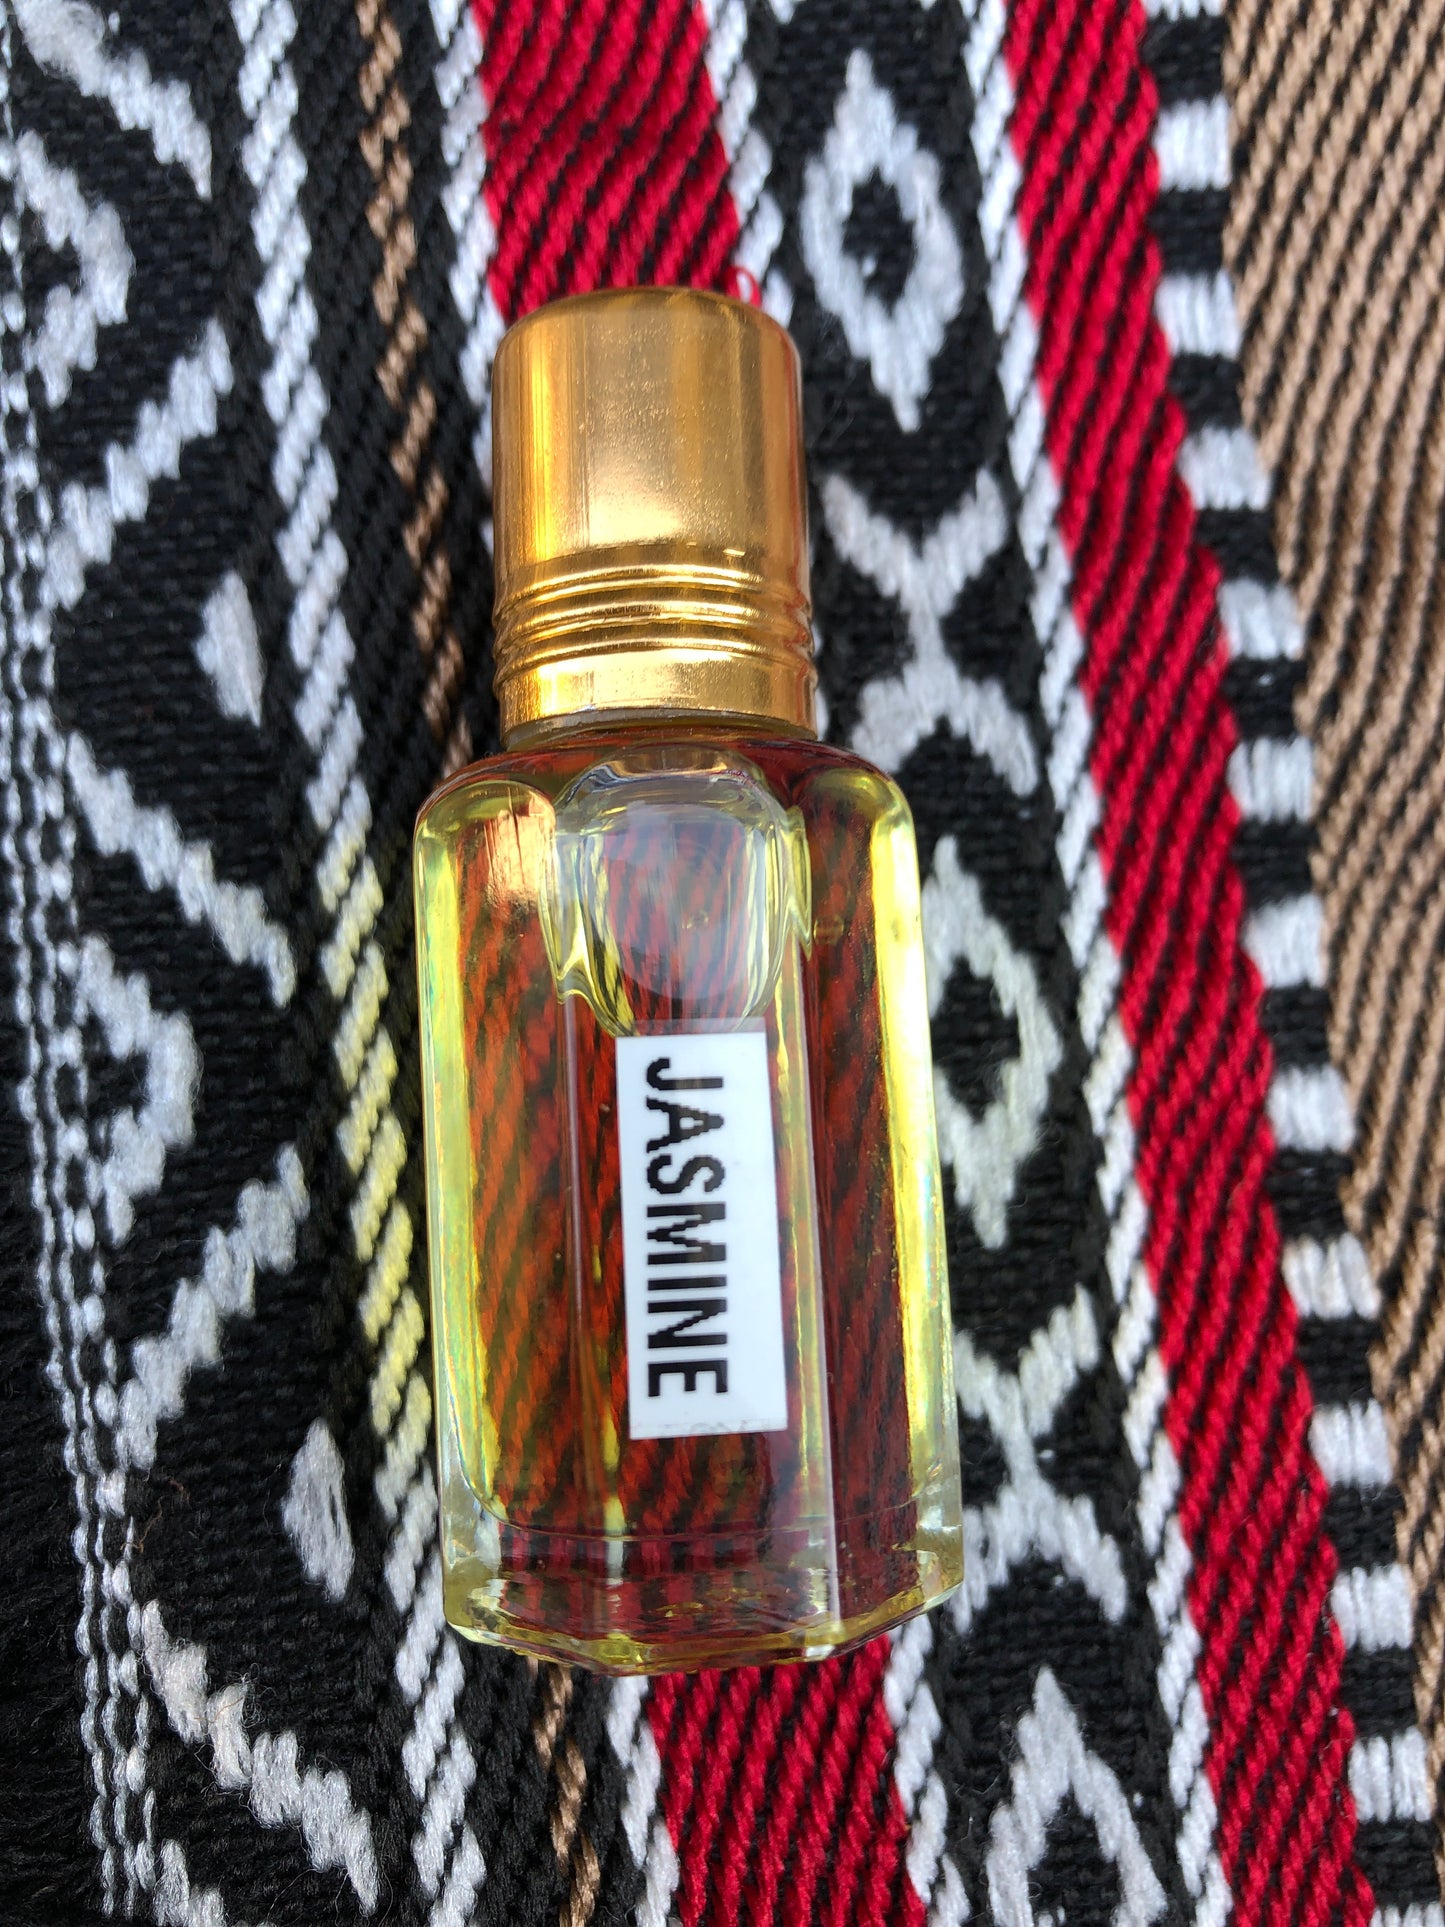 Jasmine Perfume Oil / Attar